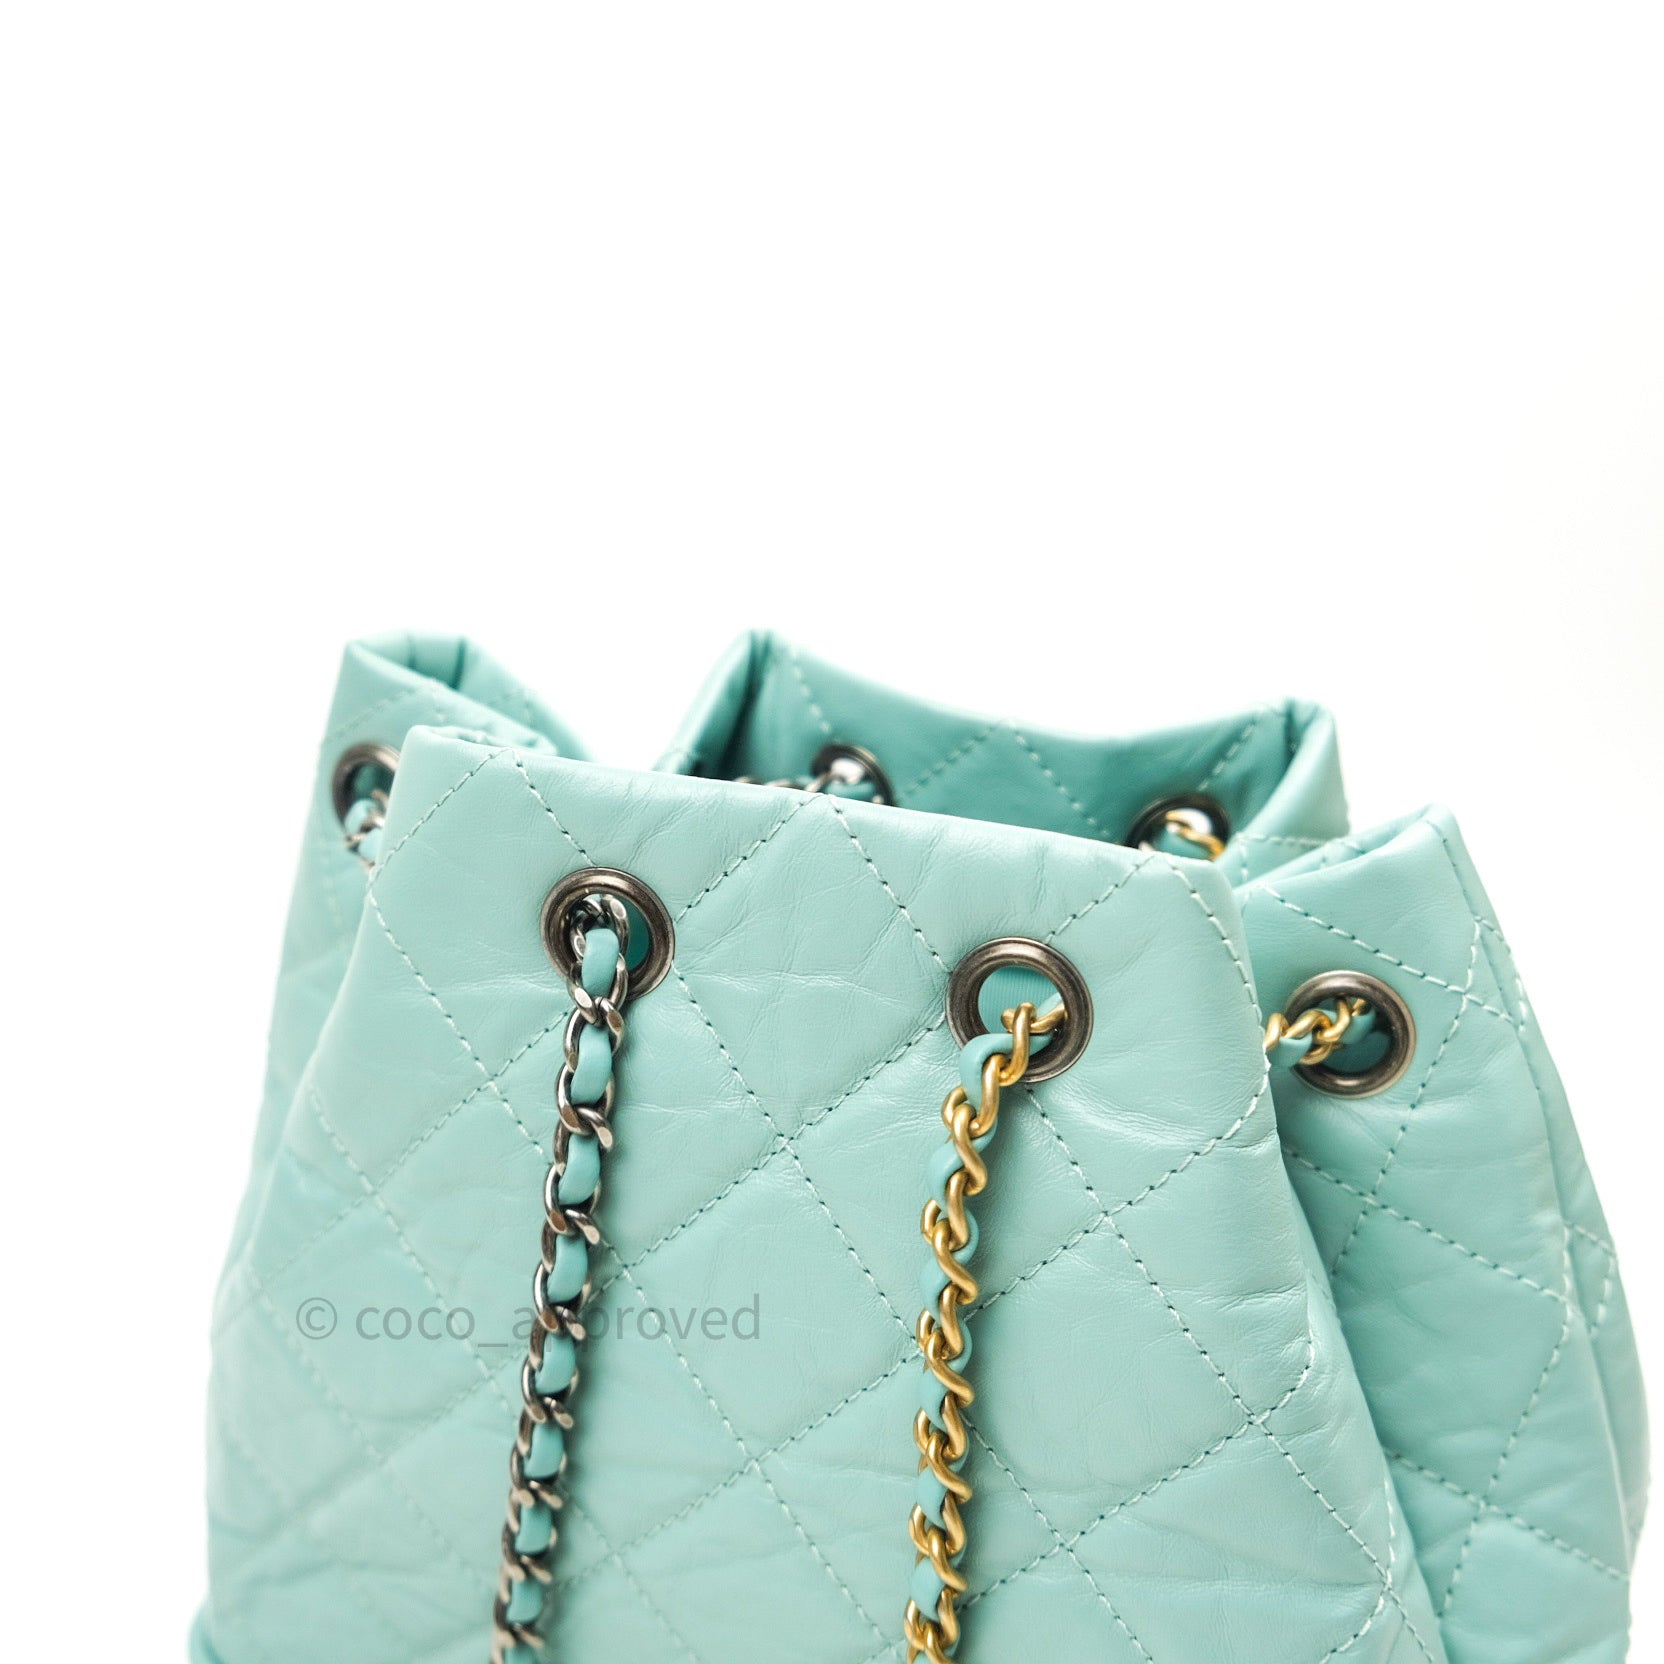 Votre Luxe - Chanel Small Blue Gabrielle Double Zip Bag ($4800